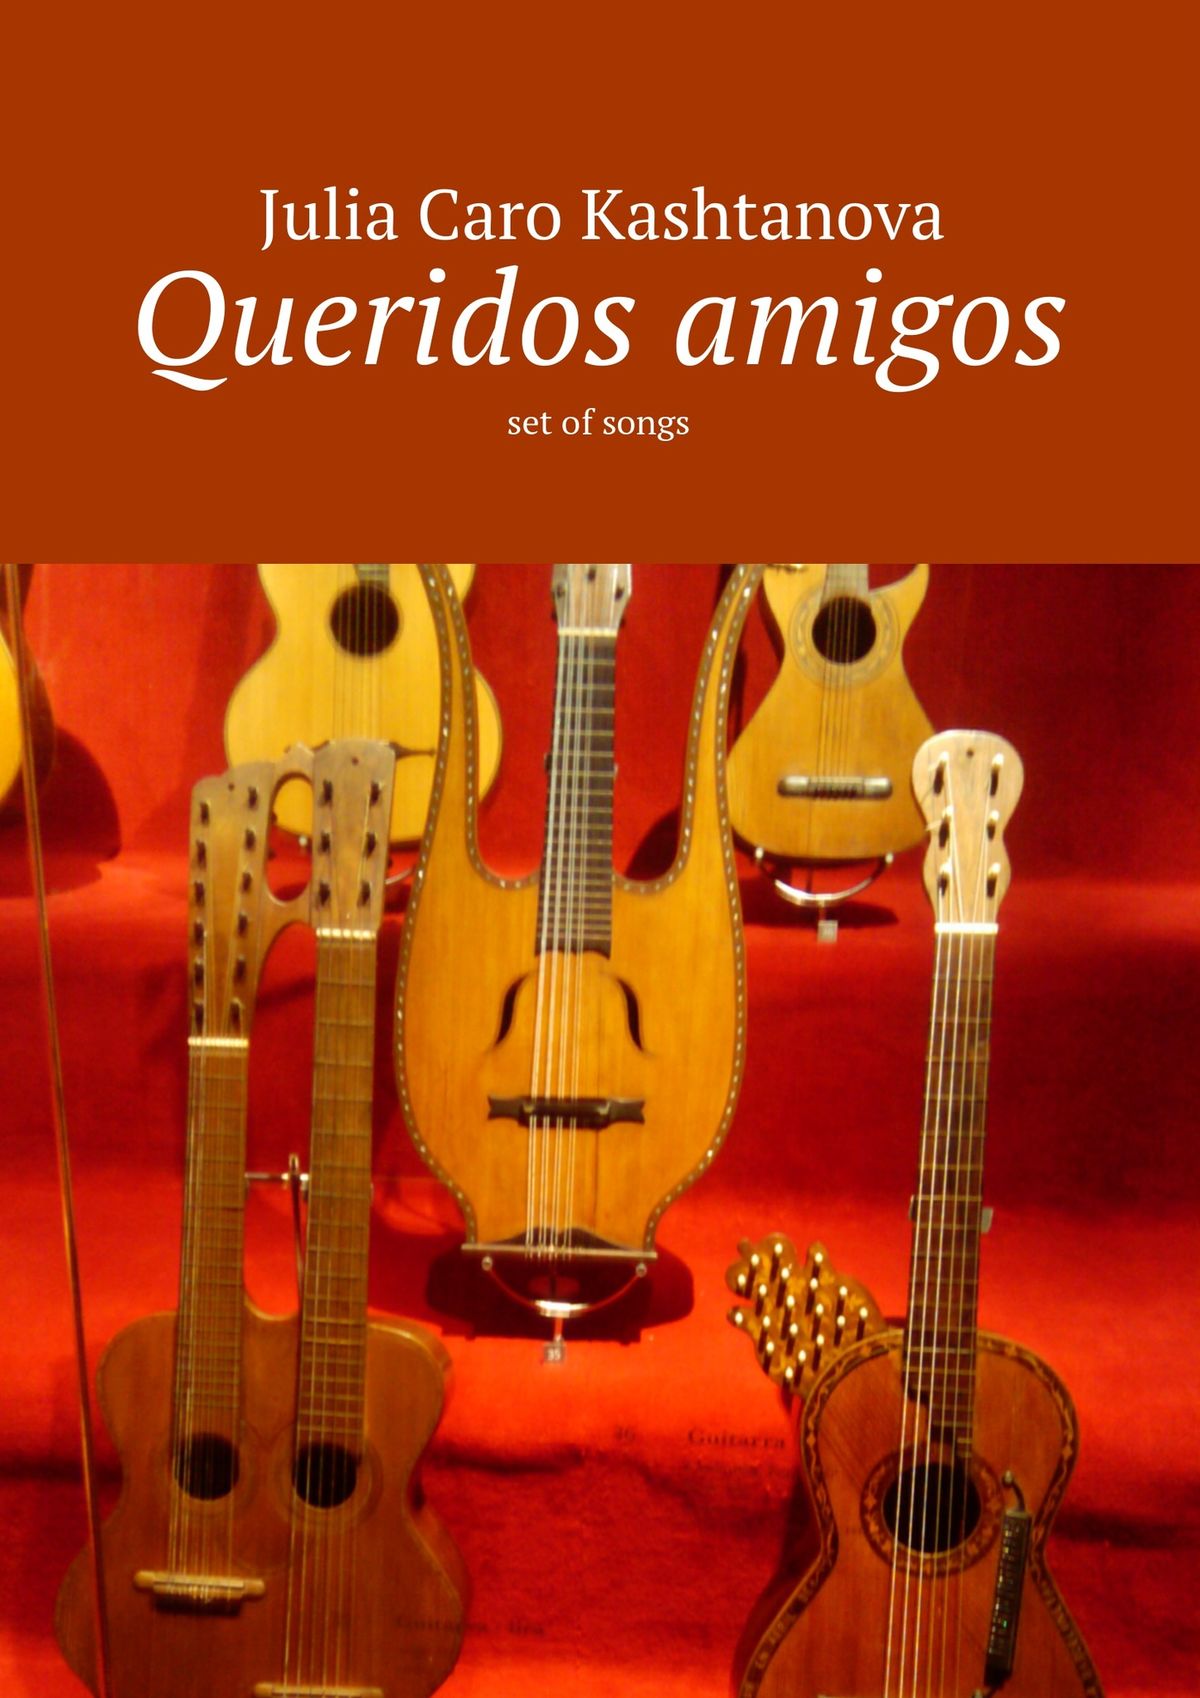 Книга Queridos amigos из серии , созданная Julia Caro Kashtanova, может относится к жанру Поэзия, Иностранные языки. Стоимость электронной книги Queridos amigos с идентификатором 12260576 составляет 300.00 руб.